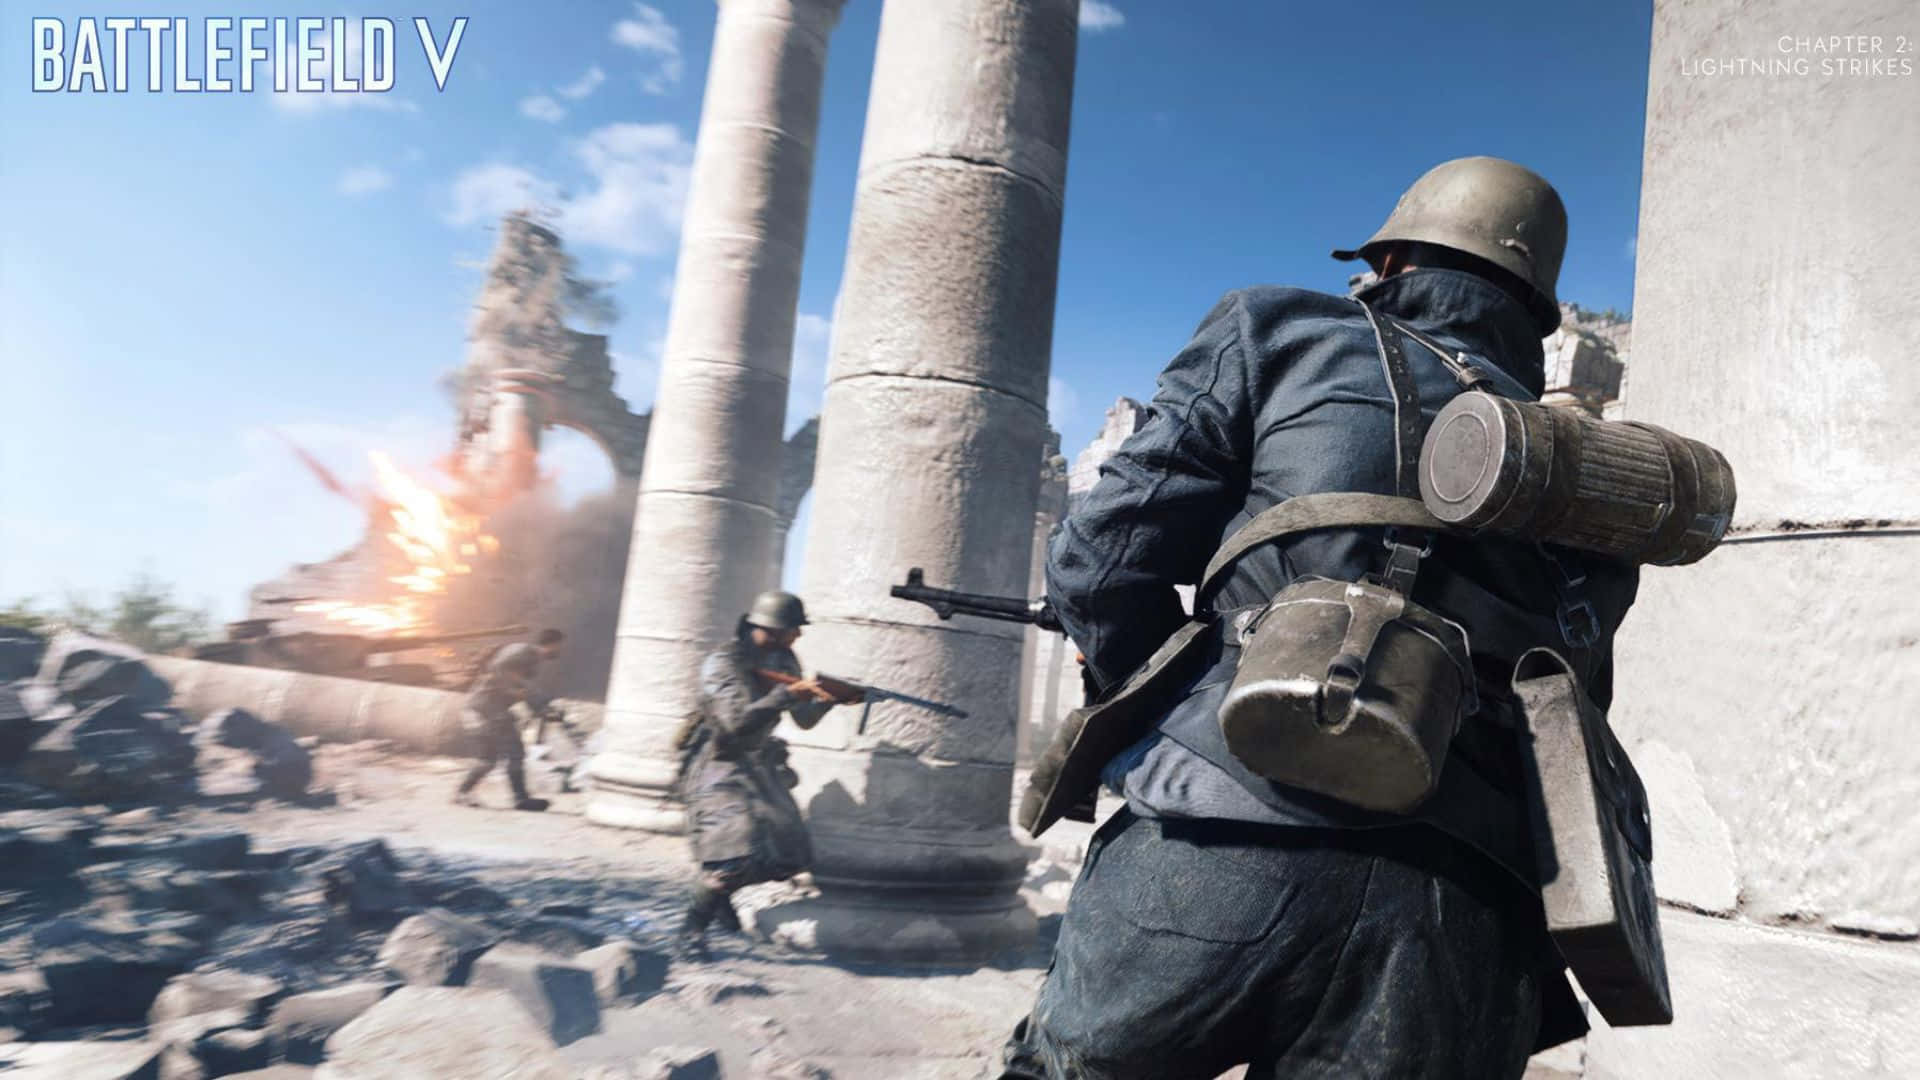 Imagende Battlefield V En Impresionante Resolución De 1080p